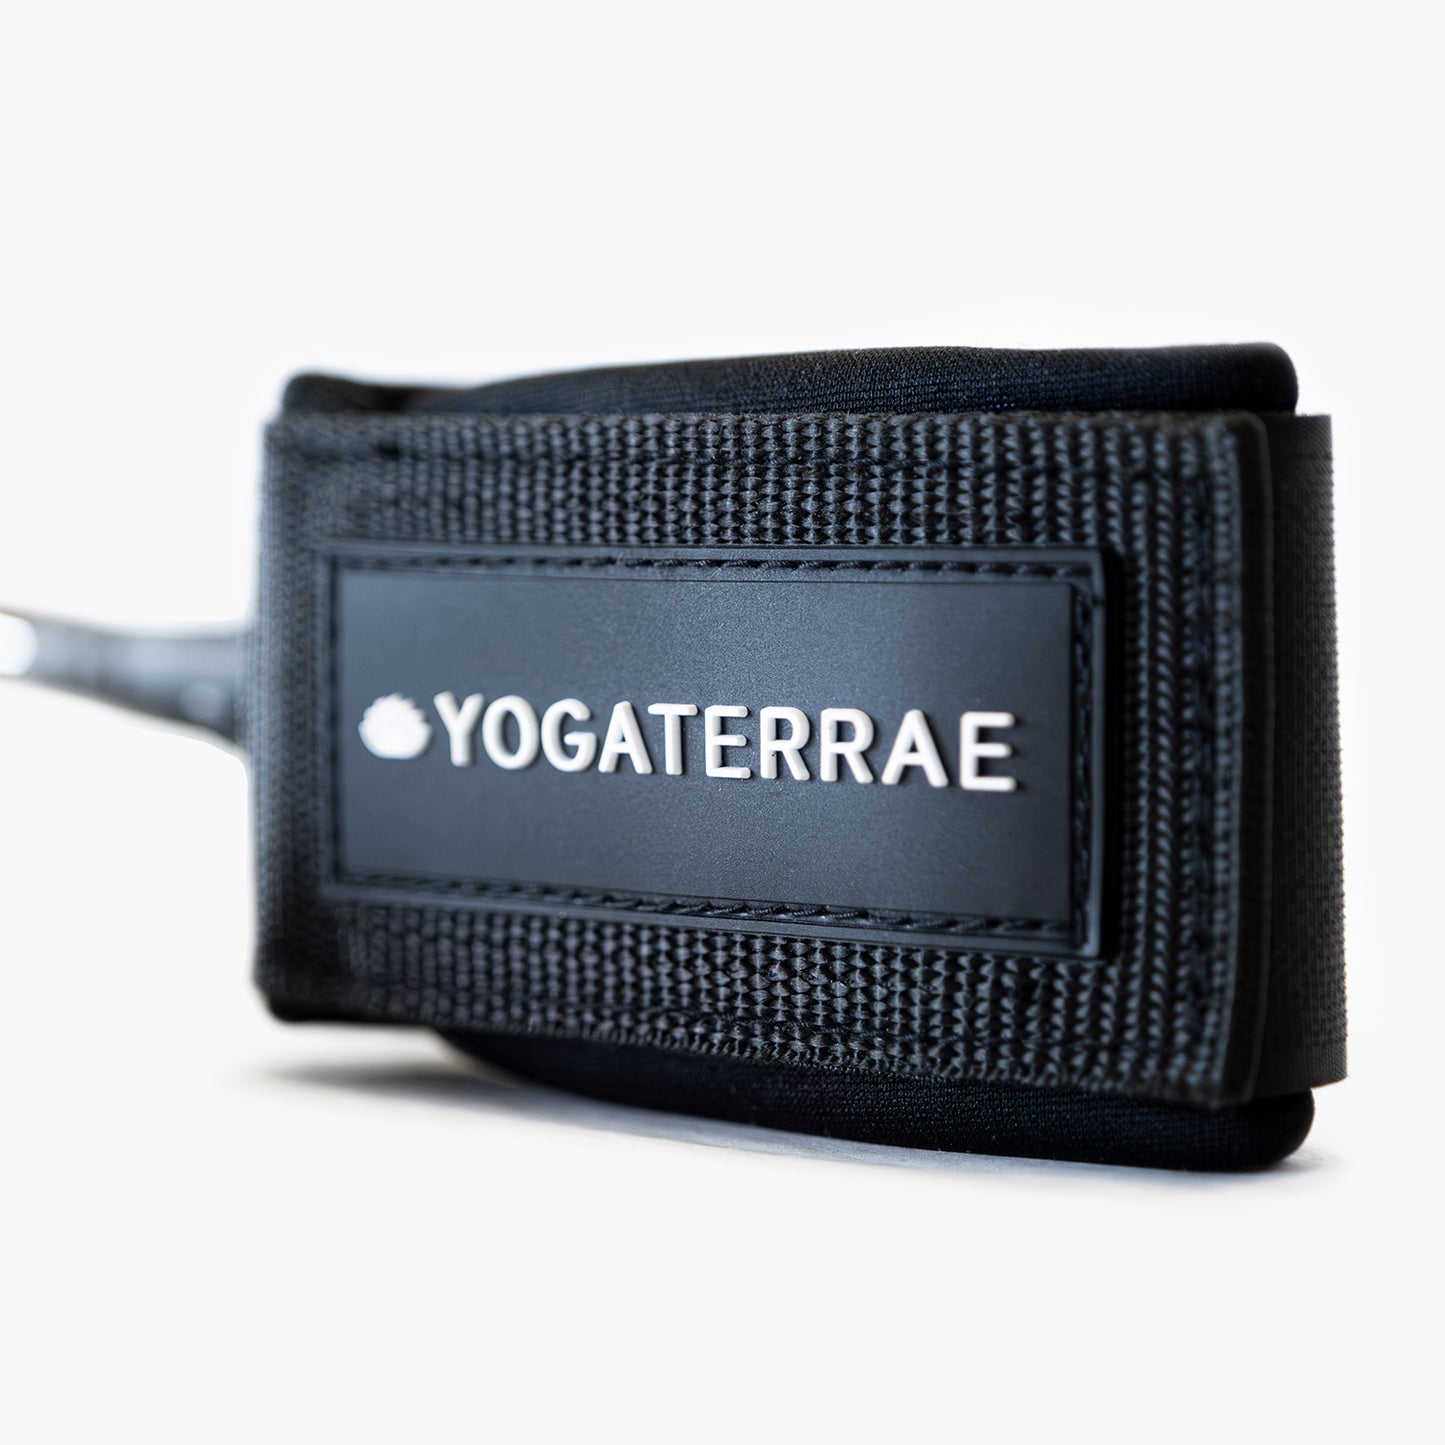 "Logo Yogaterrae en impression 3D qualité premium sur sangle spirale de sécurité 3 m de longueur"